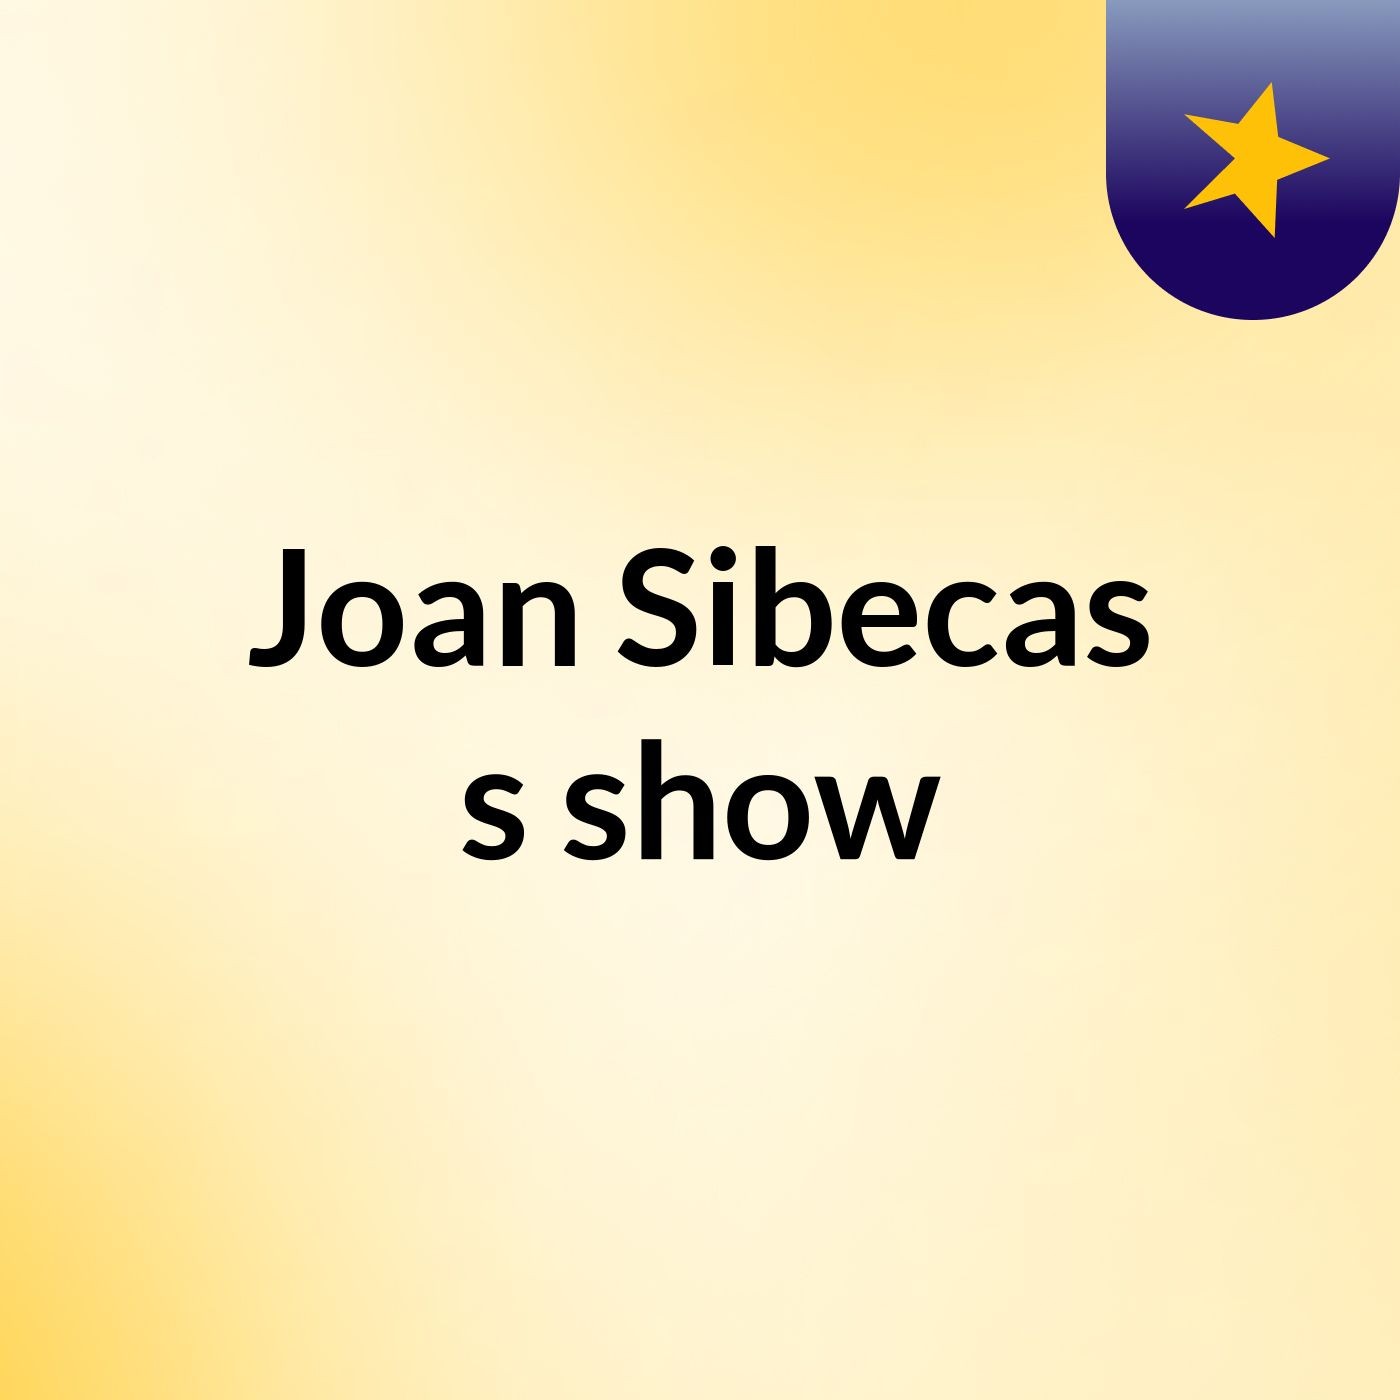 Joan Sibecas's show